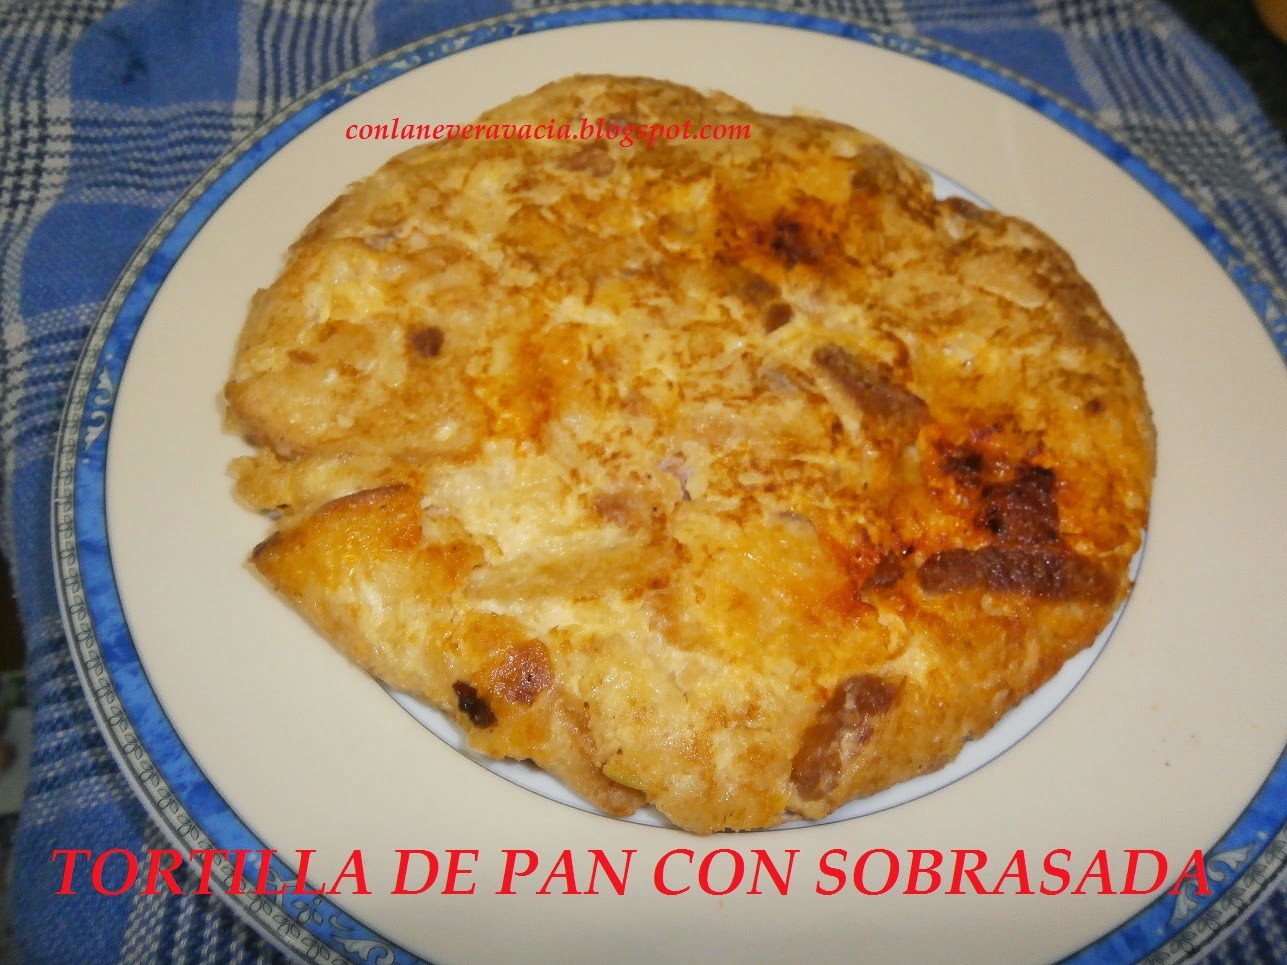 TORTILLA DE PAN CON SOBRASADA